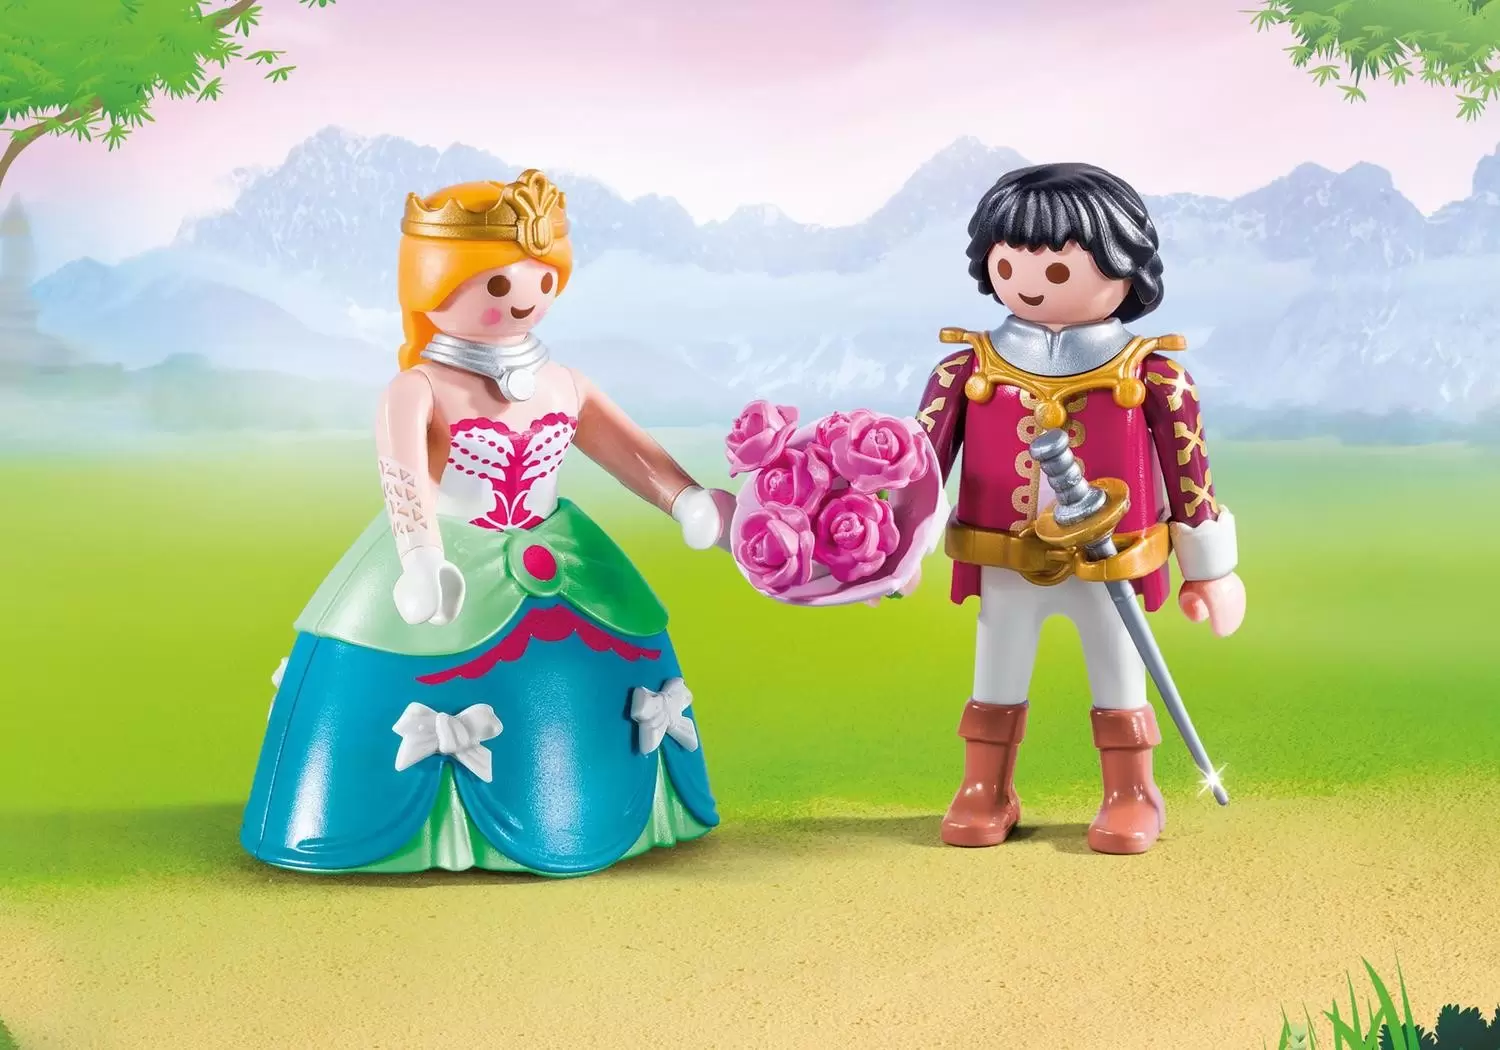 Playmobil Princess - Prince and Princess